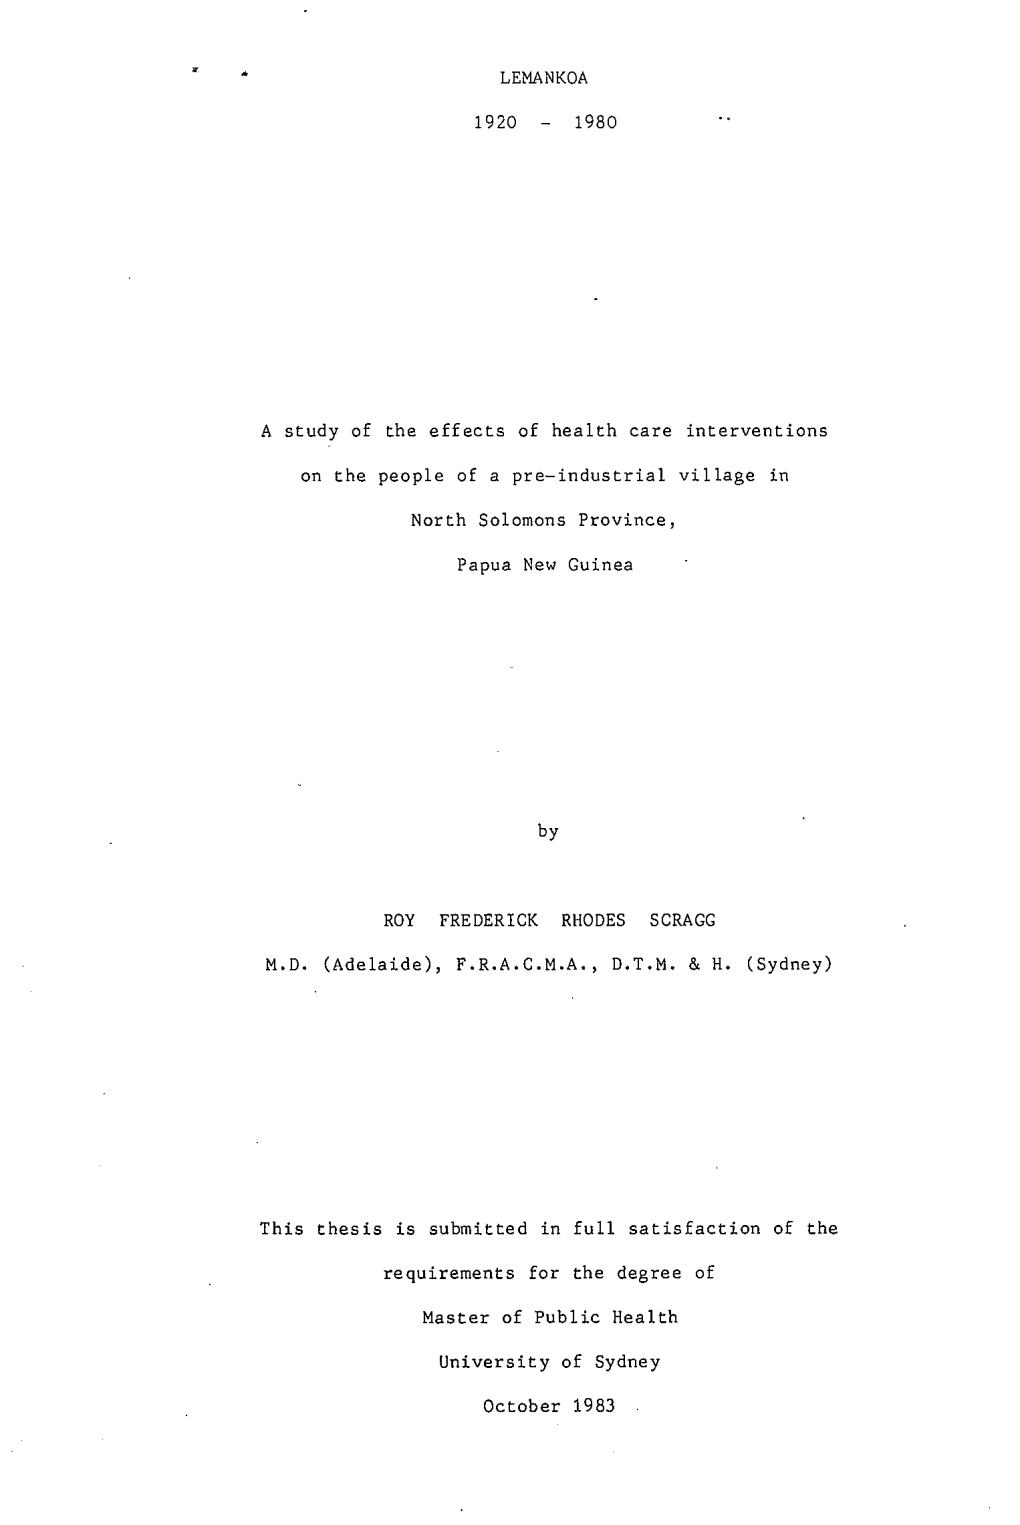 Lemankoa 1920-1980 RFR Scragg.Pdf (PDF, 3.79MB)